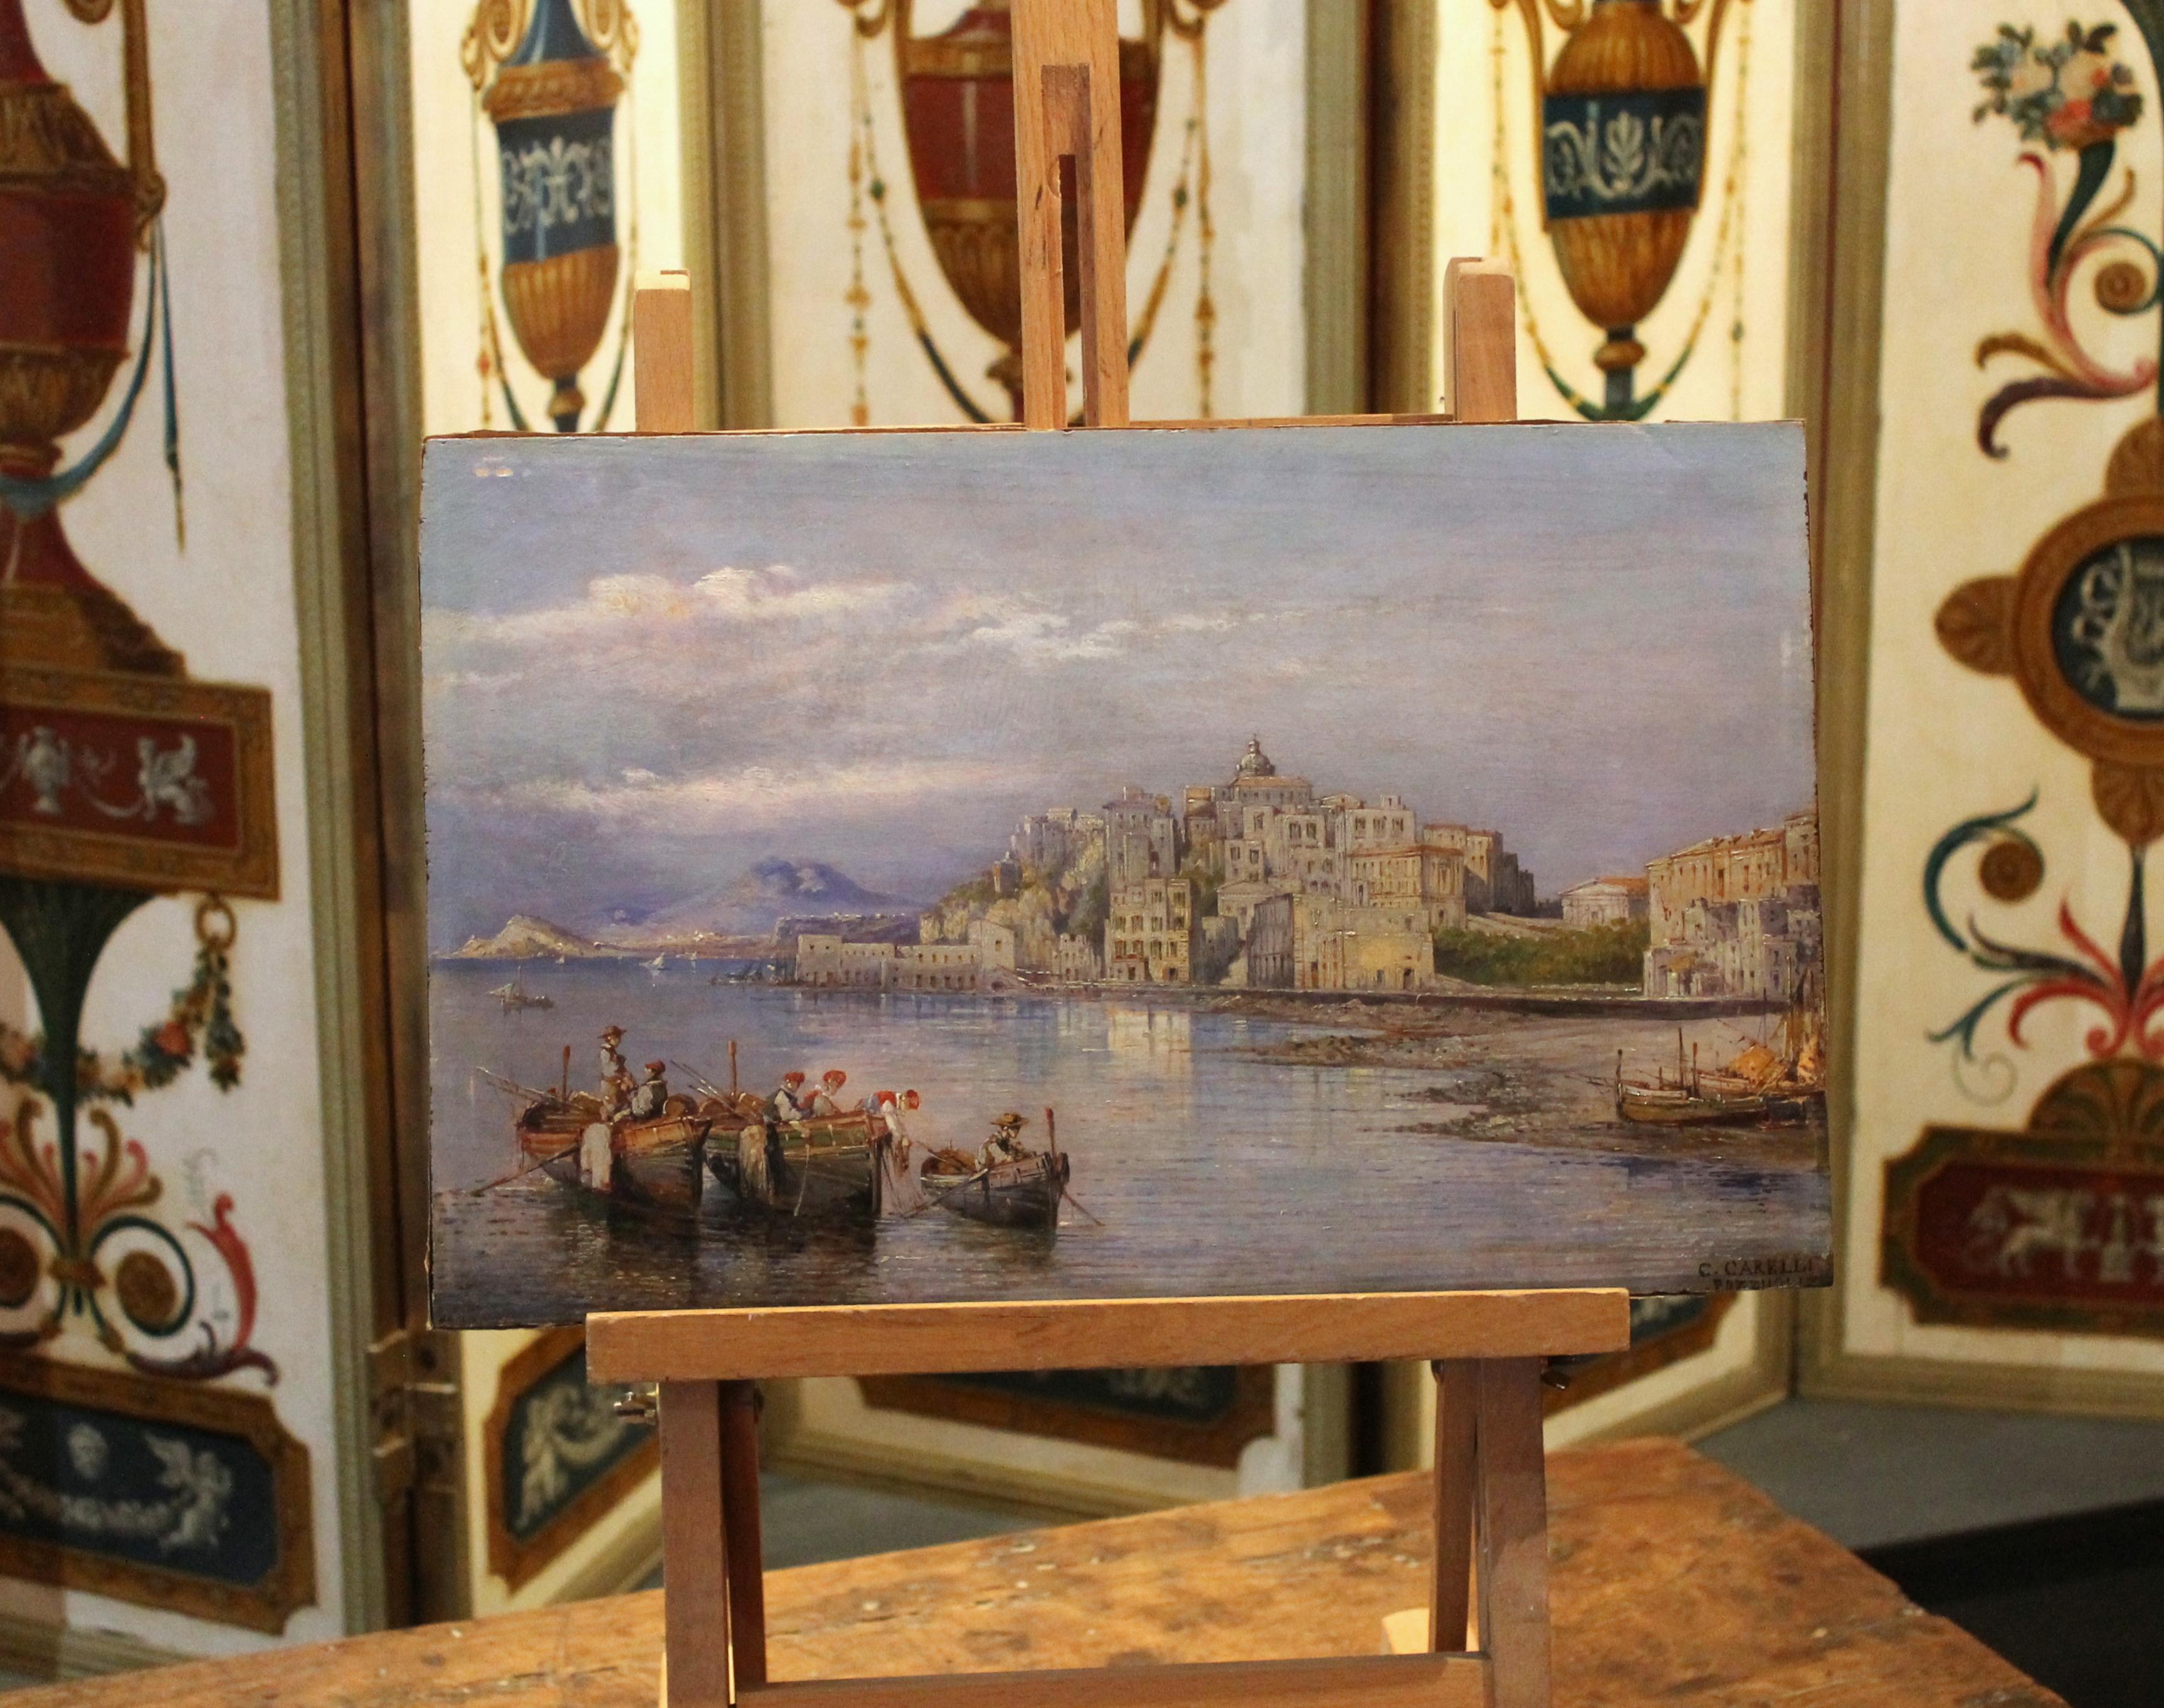 C'est une joie pour les yeux et l'âme d'admirer les innombrables détails de ce village surplombant la mer de la baie de Naples avec le mont Vésuve à l'arrière-plan représenté dans cette peinture à l'huile sur carton de maîtres anciens.
Ce superbe